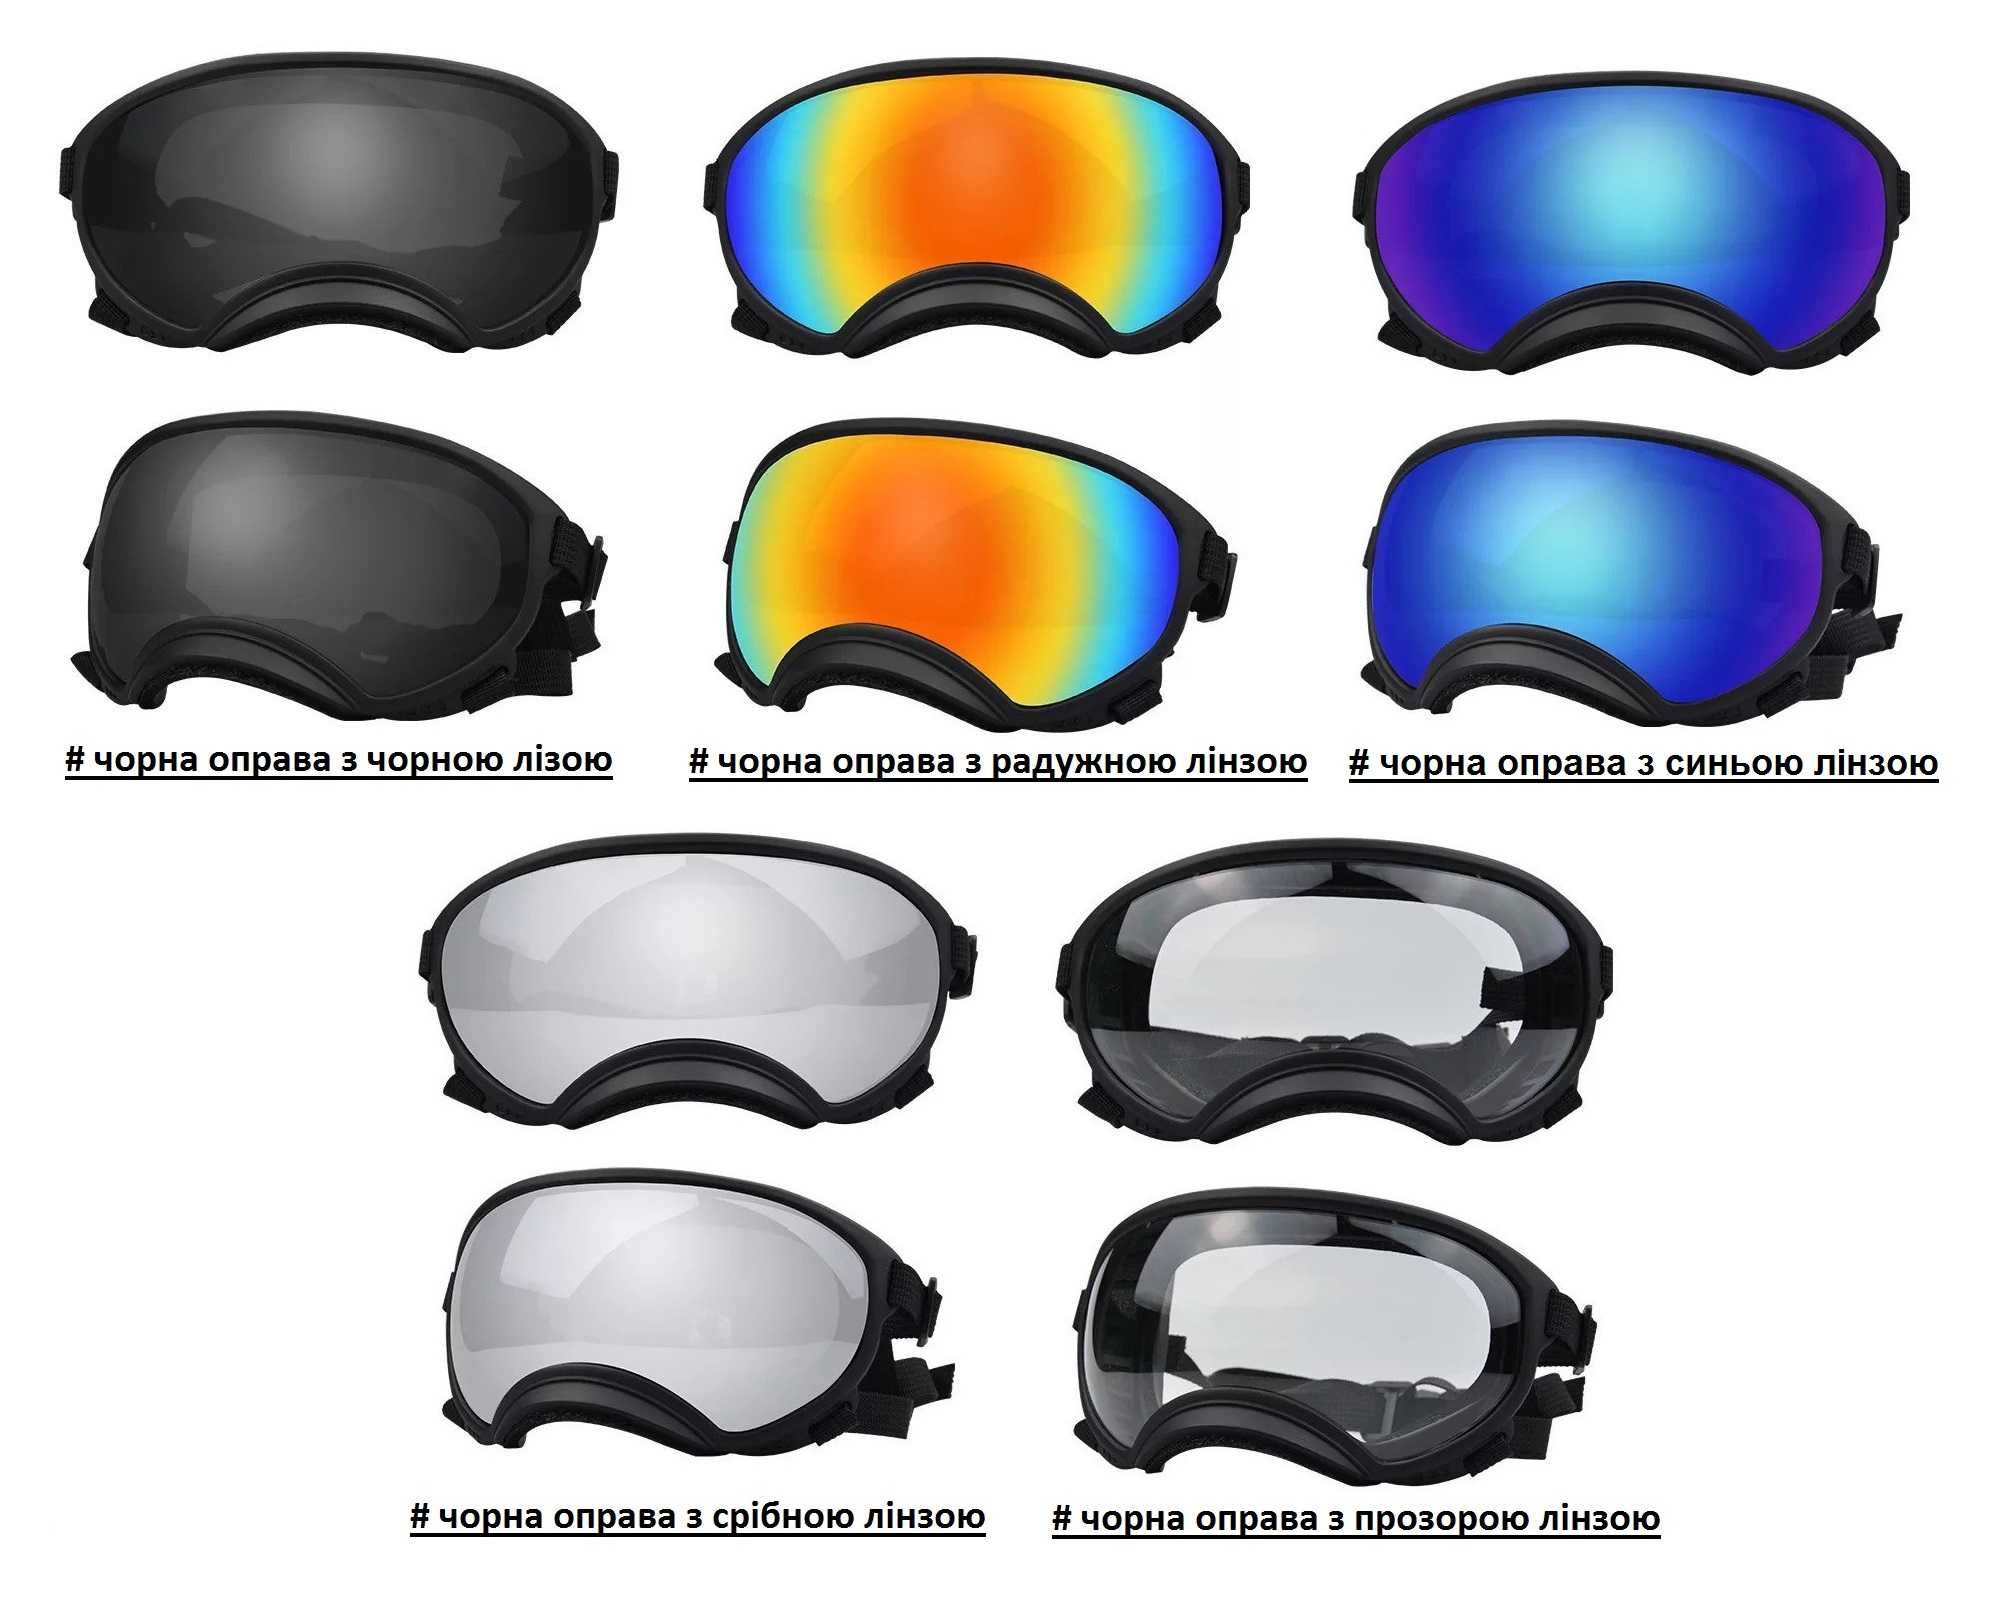 Захисні окуляри Anlorr для собак, захист від ультрафіолету.